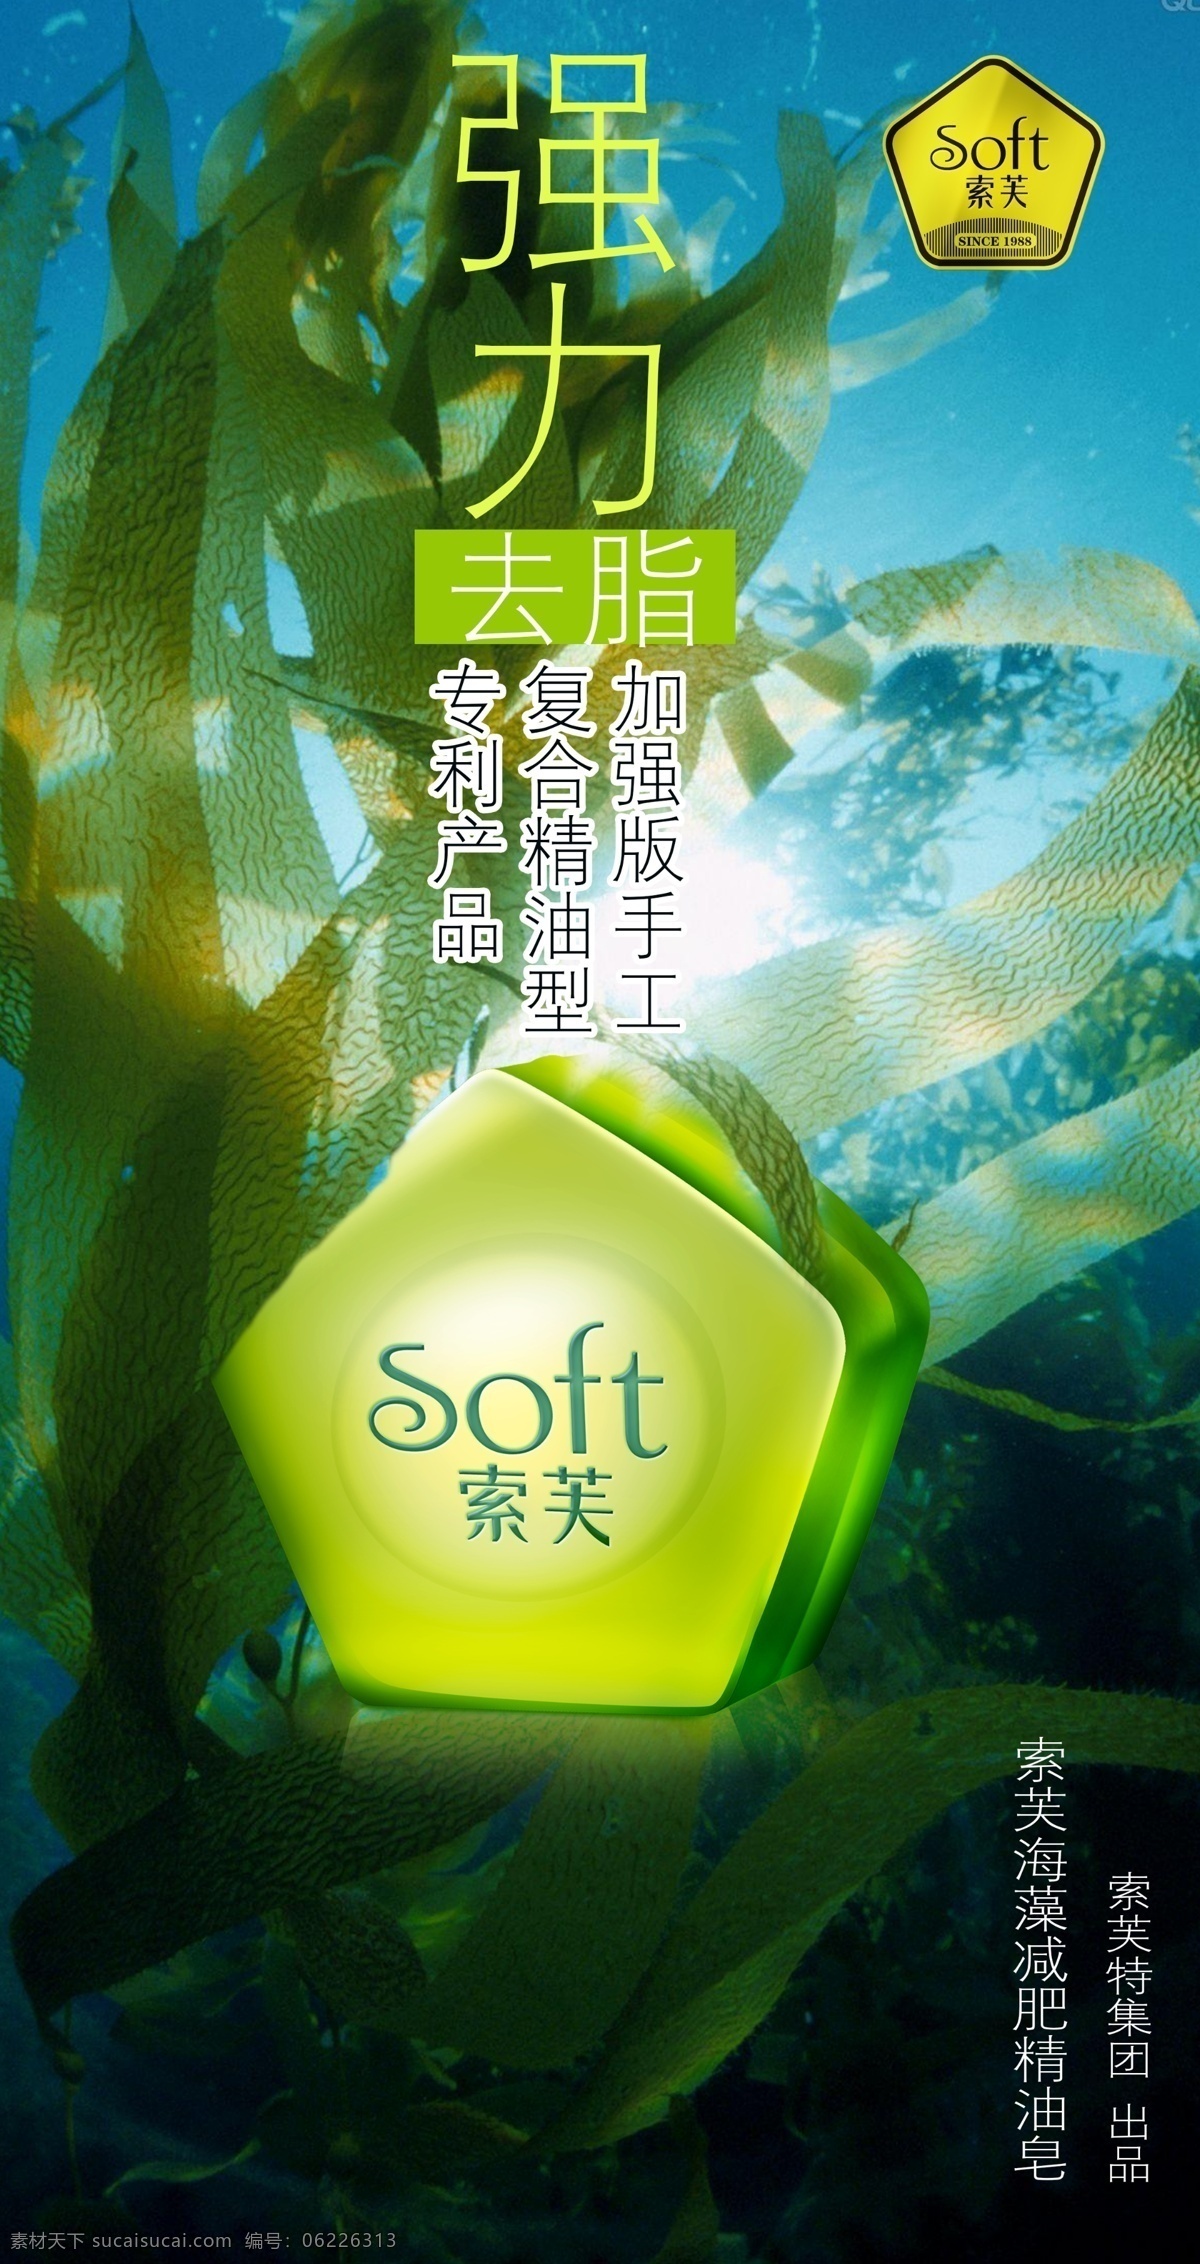 索 芙 海藻 减 肥皂 索芙 减肥皂 海底 深海 强力型 减肥